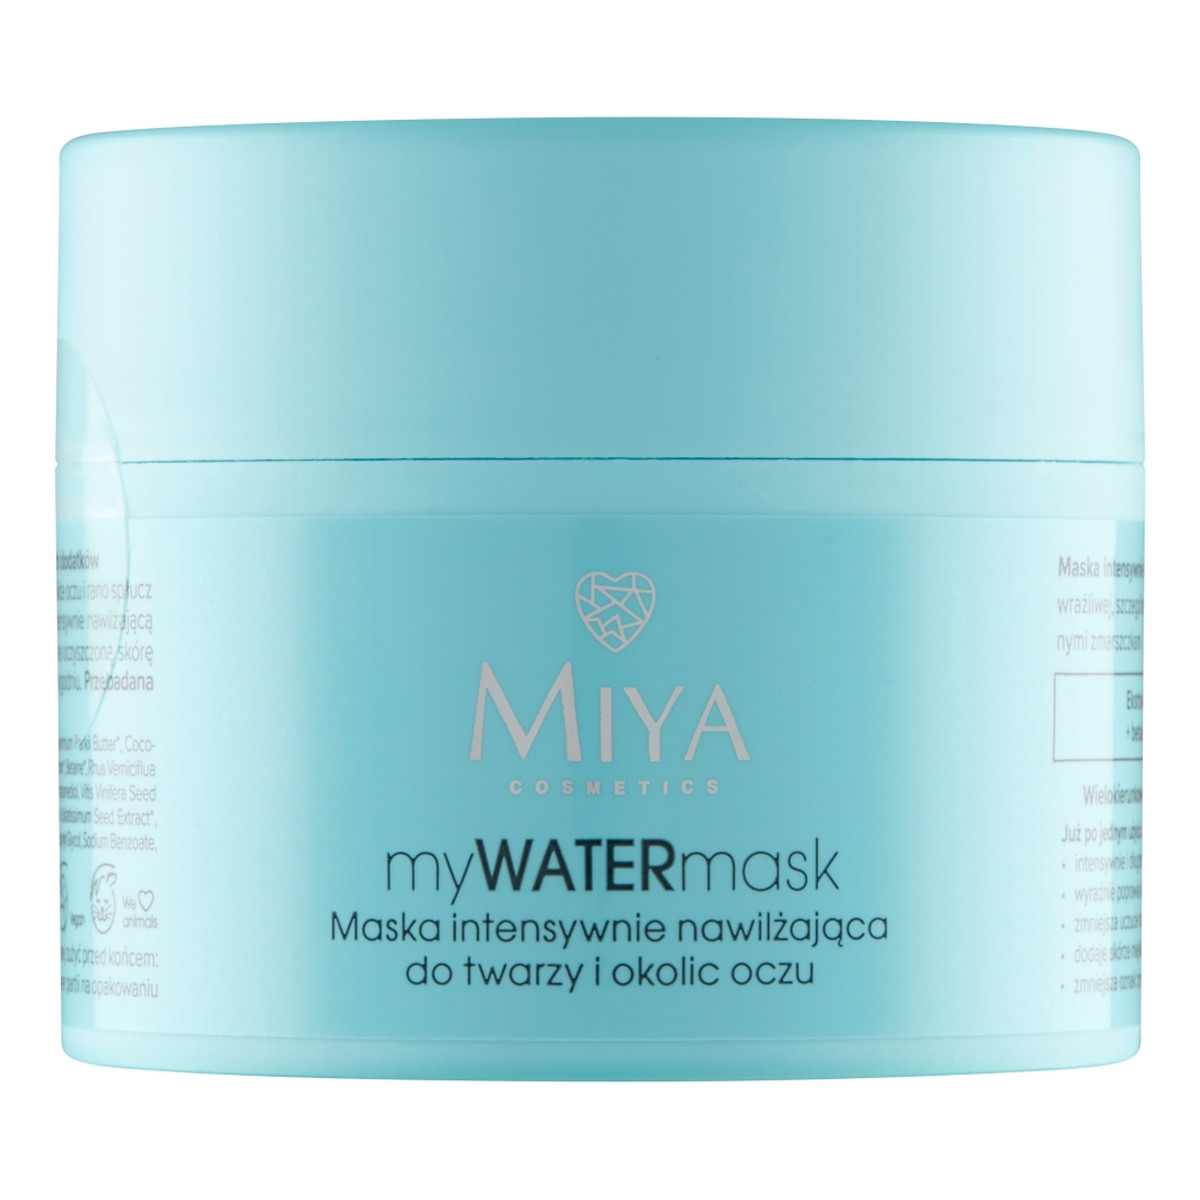 Miya Cosmetics Mywatermask maska intensywnie nawilżająca do twarzy i okolic oczu 50ml